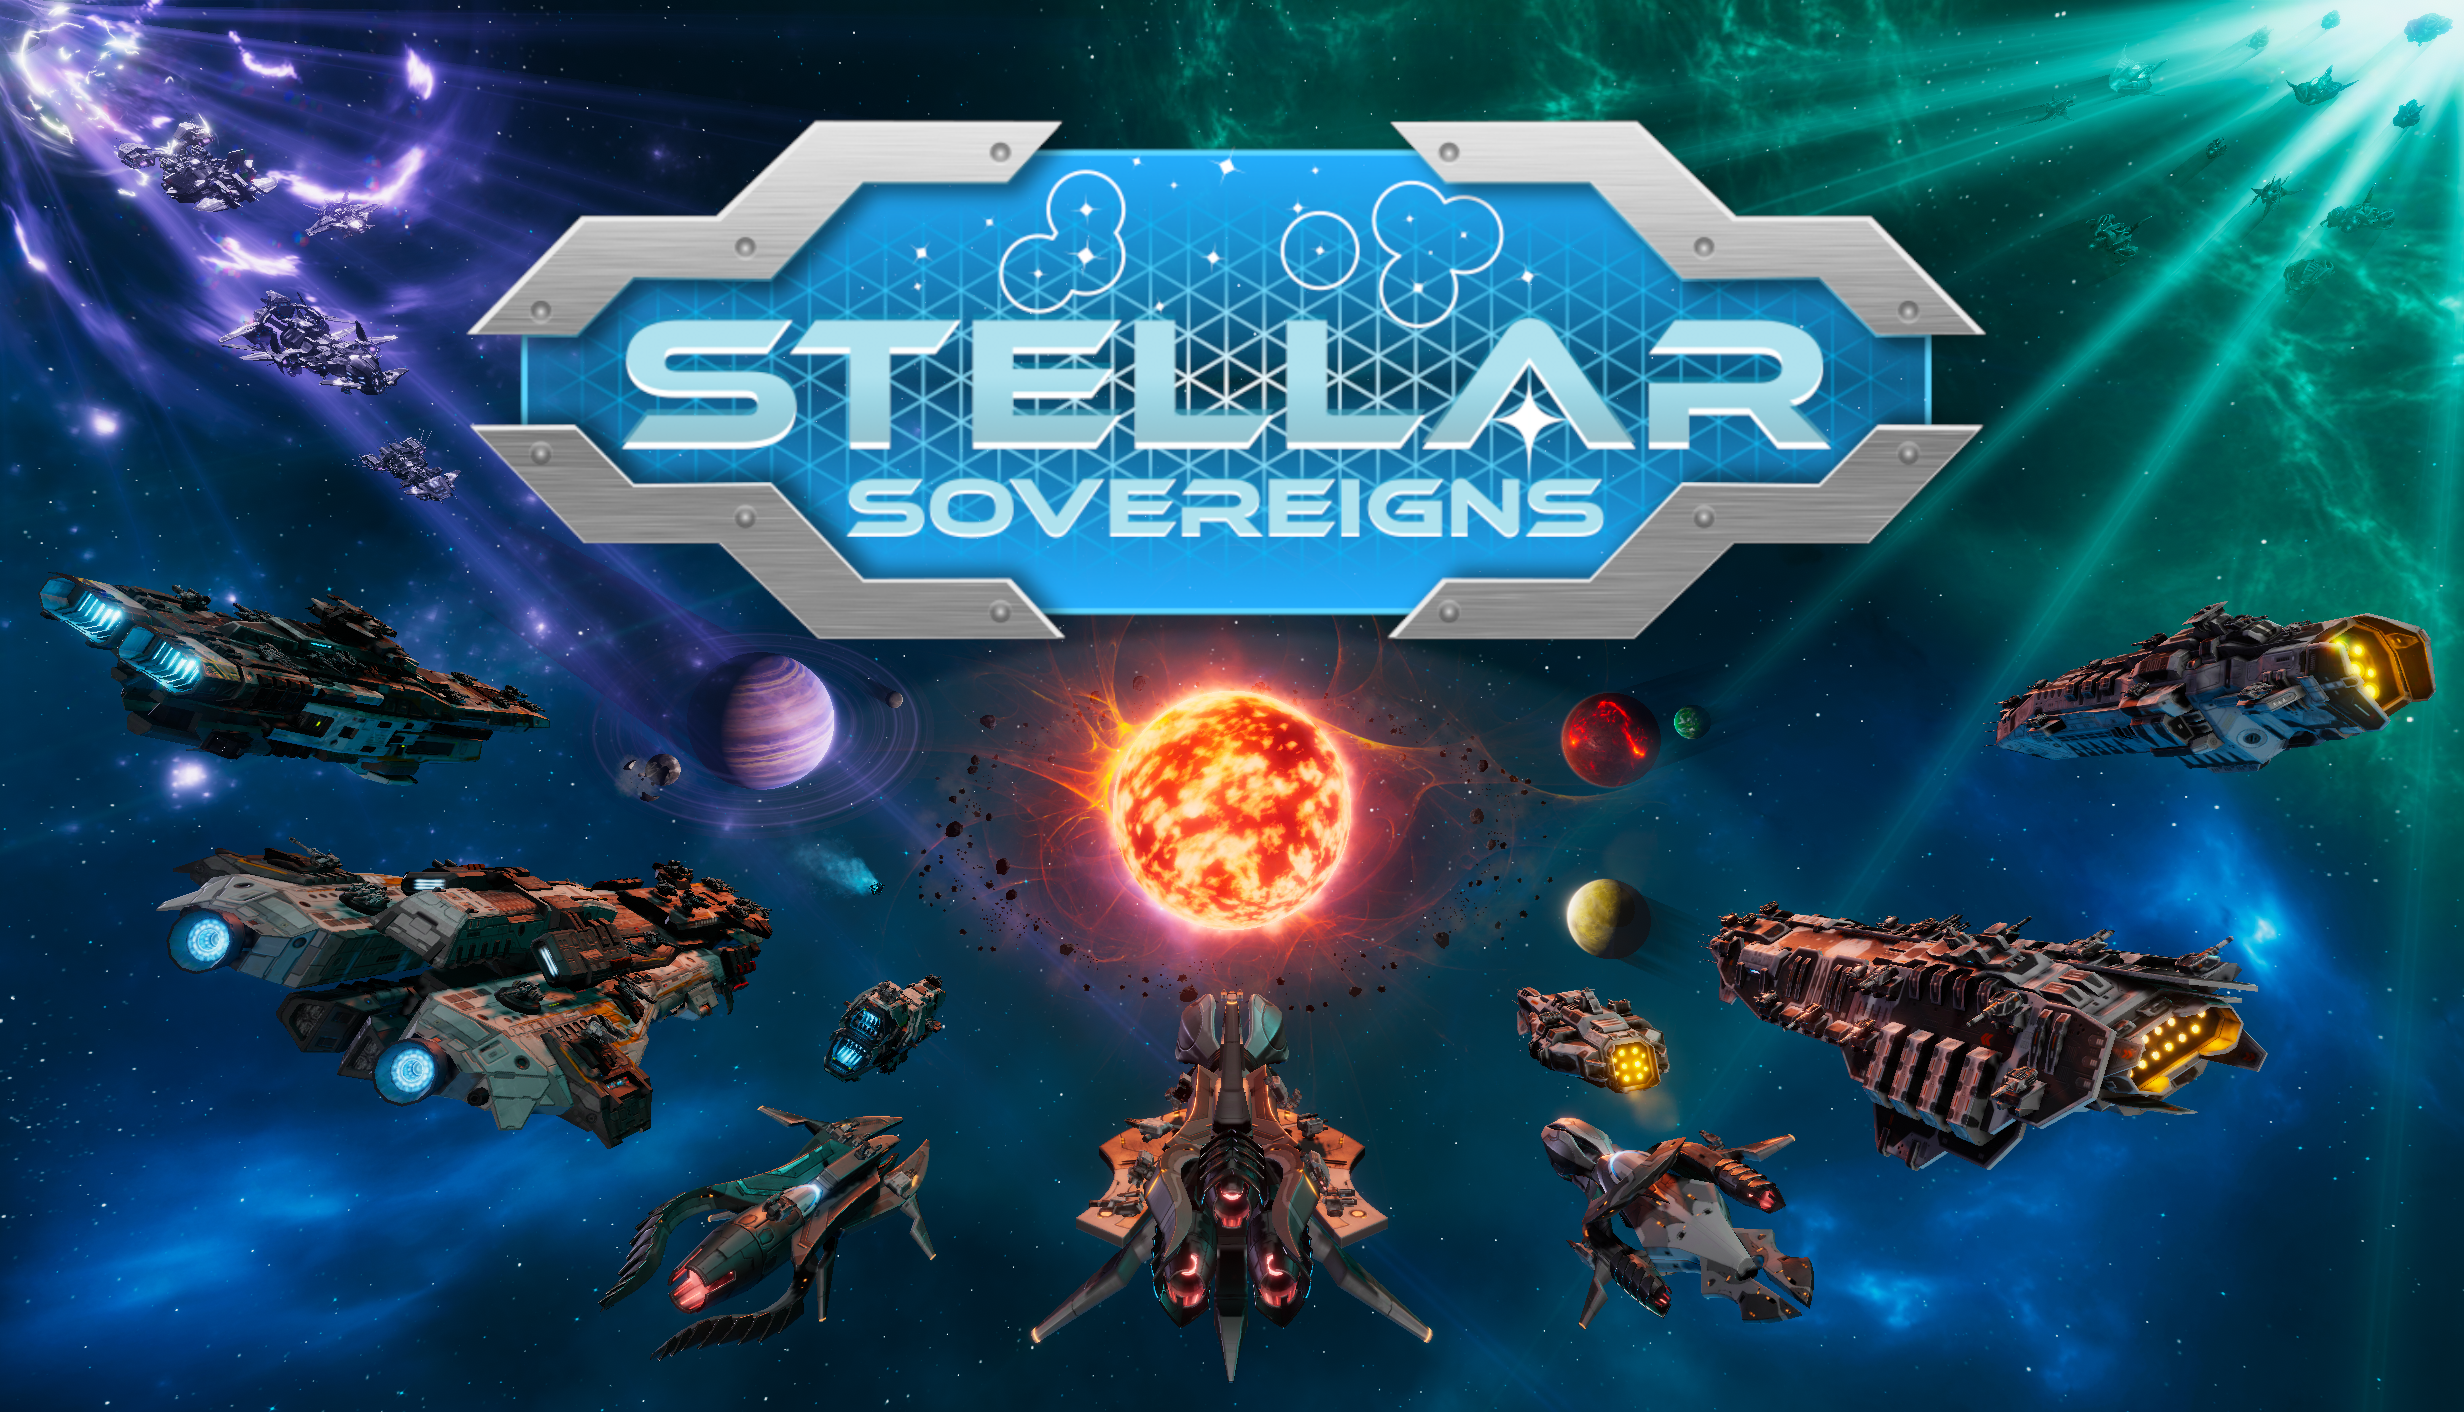 Stellar Sovereigns